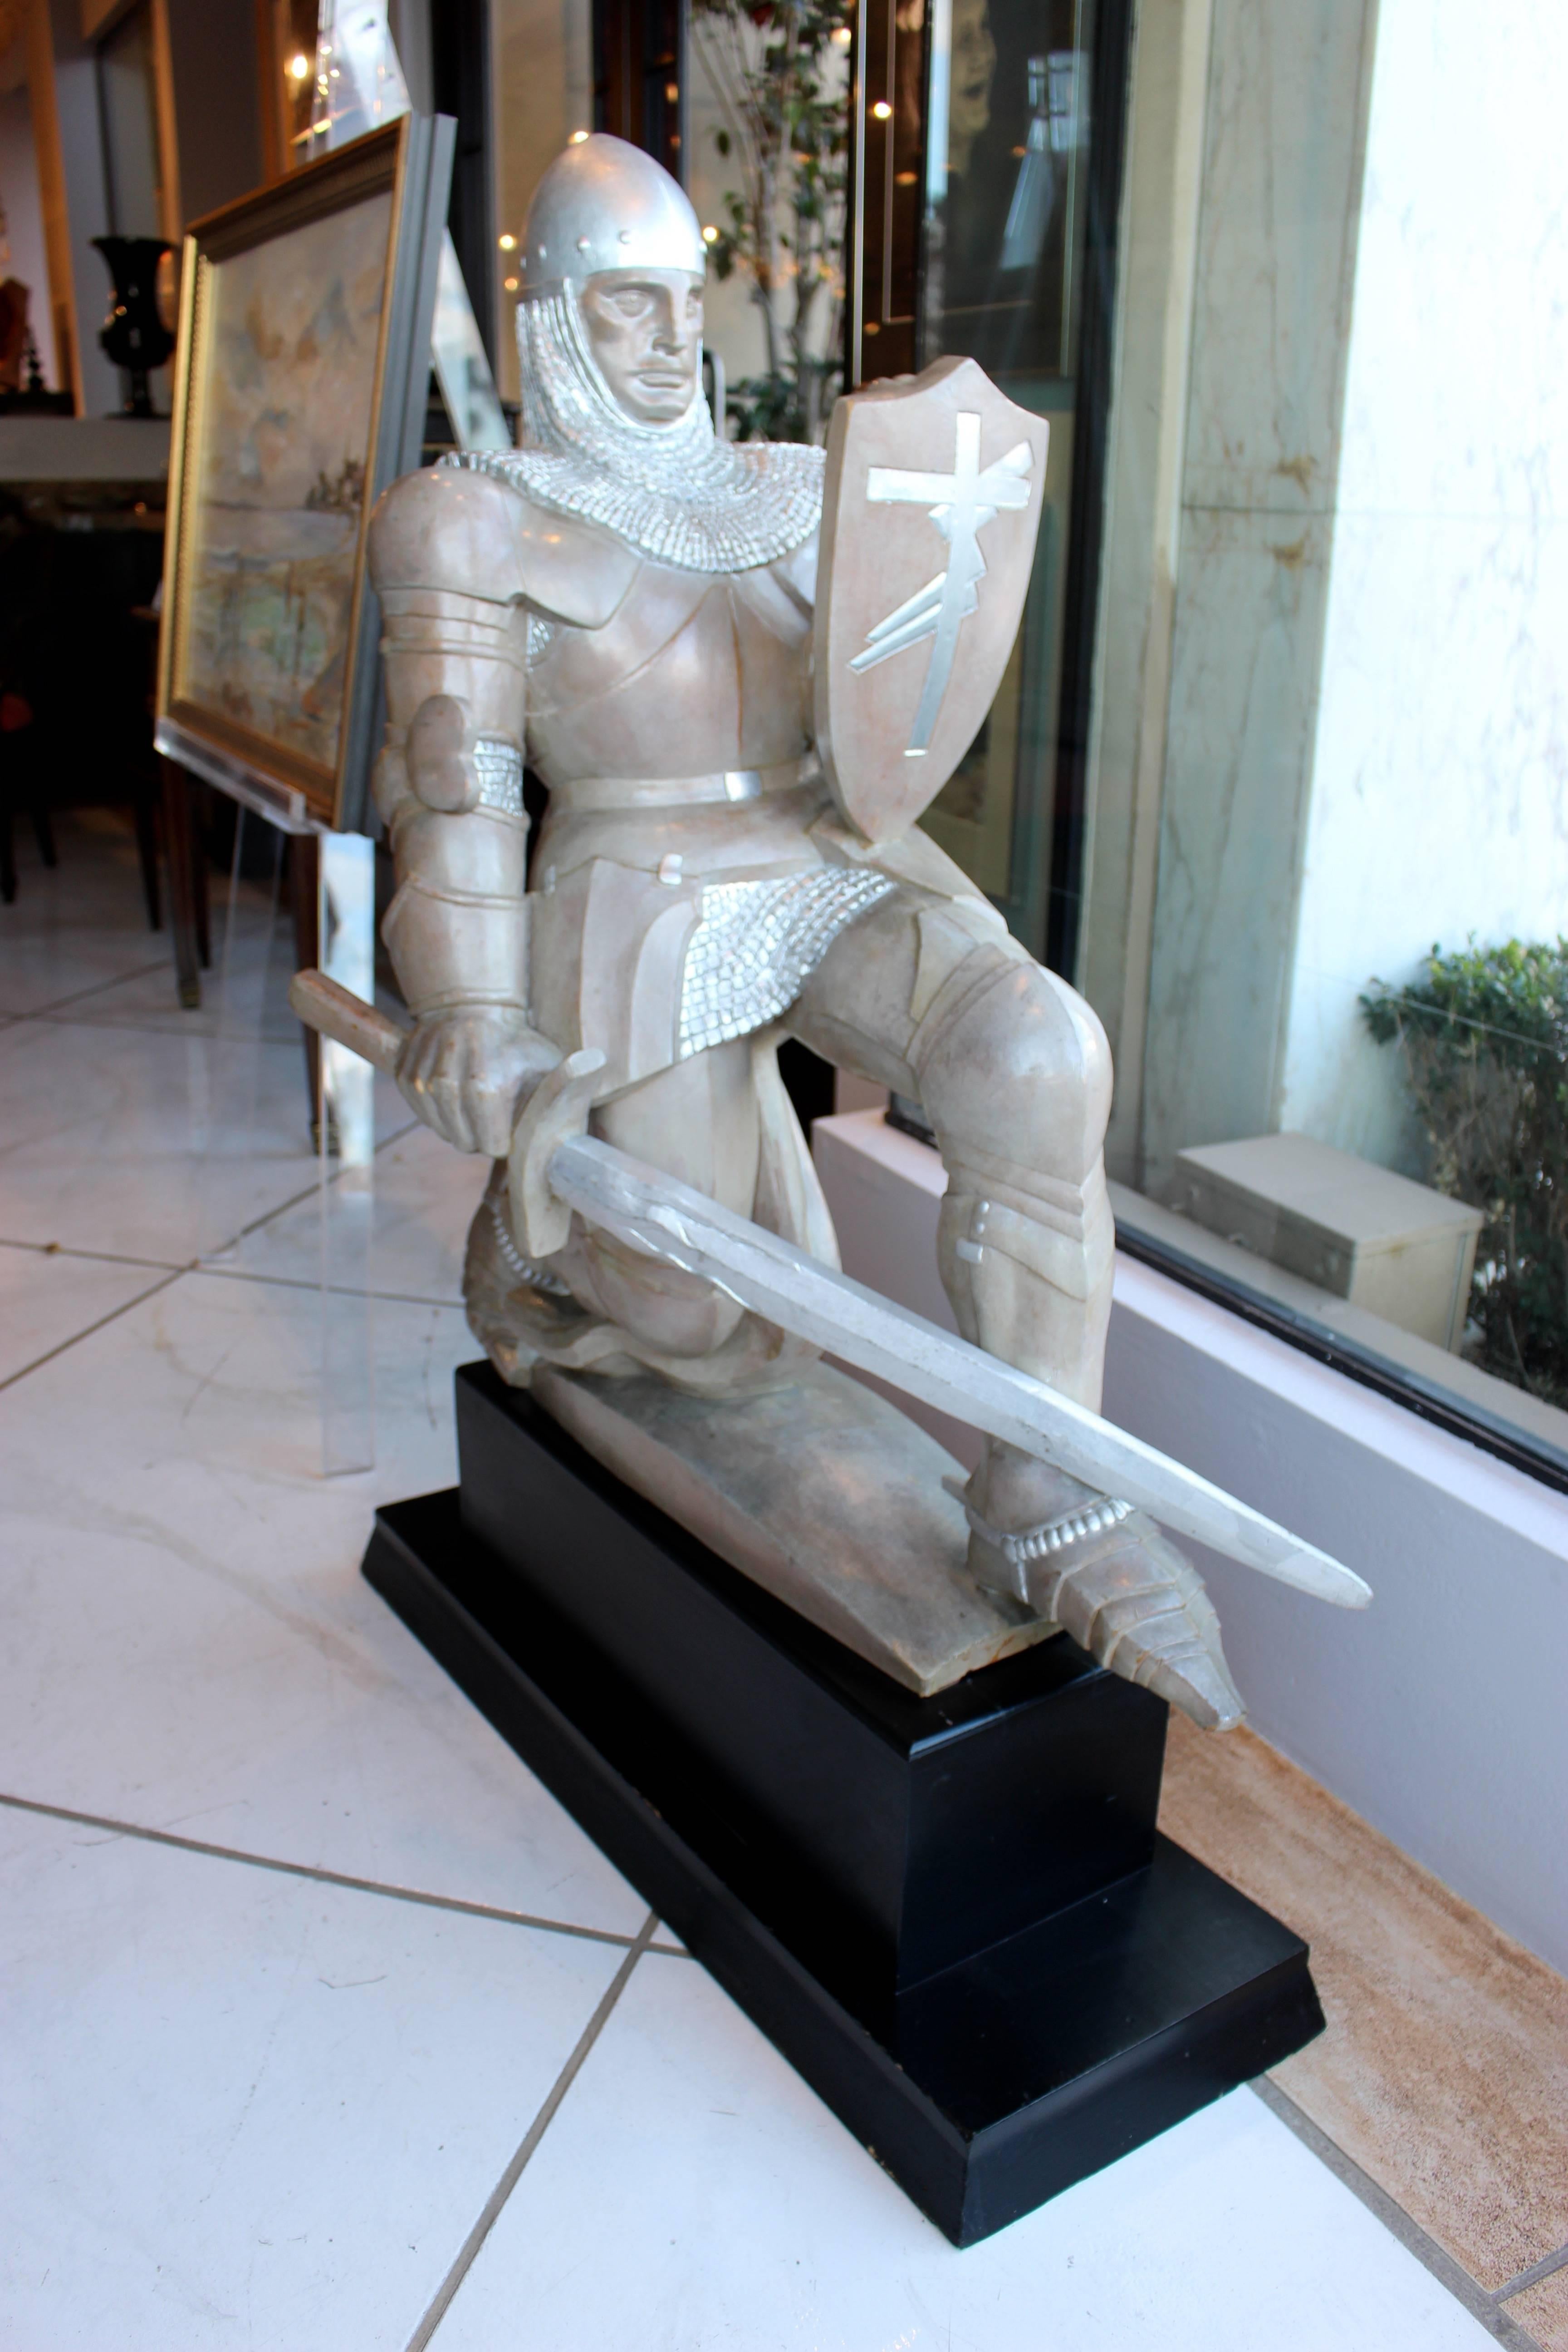 Sculpture en bois sculpté représentant un chevalier croisé, datant du milieu du 20e siècle et peinte en couleur argentée avec des nuances de brun. Le chevalier est agenouillé sur un piédestal rectangulaire ultérieur en bois noir, tenant son épée à